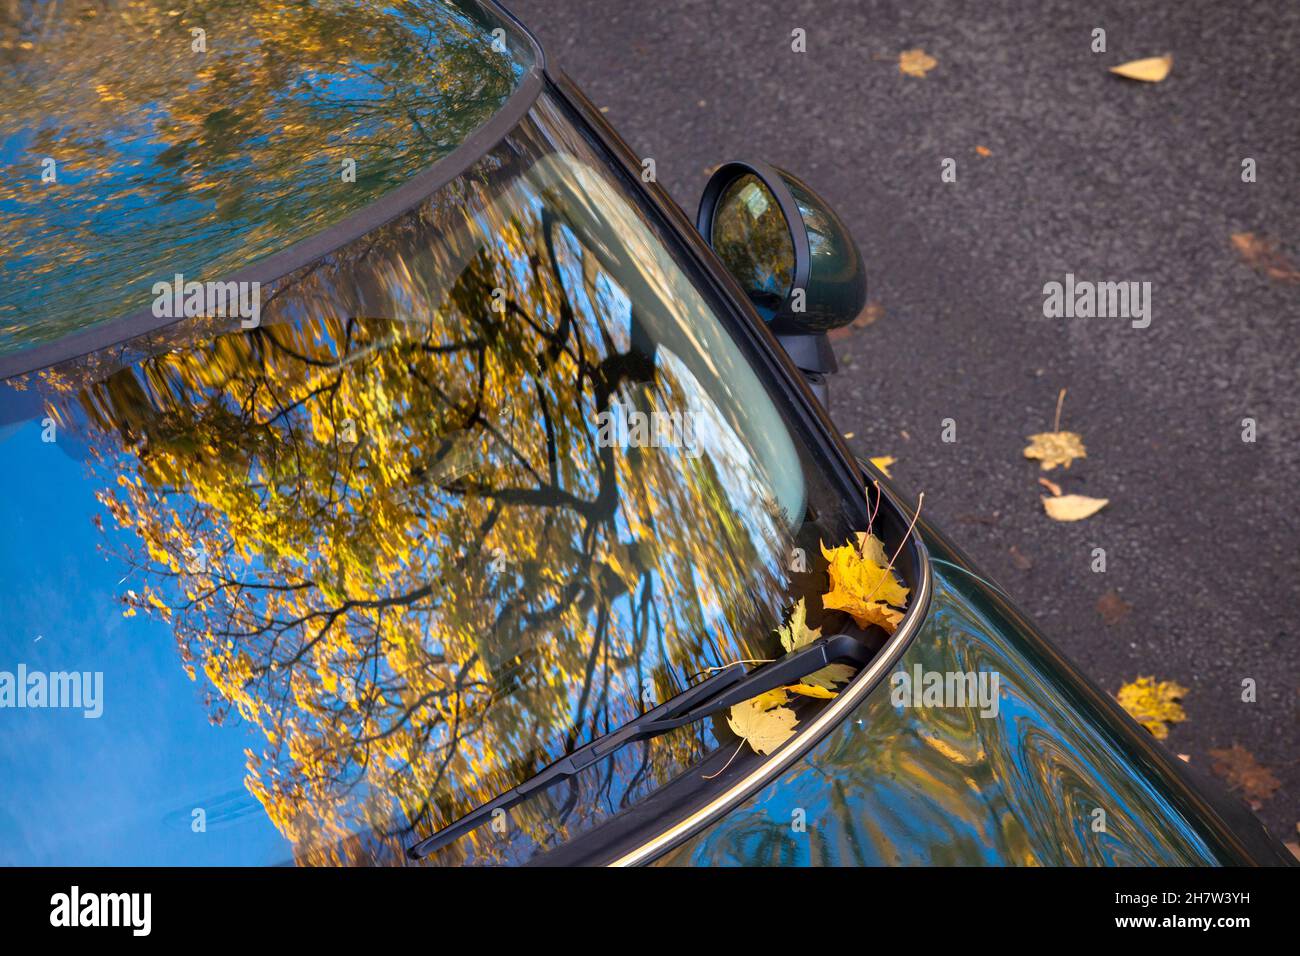 Un albero di acero in autunno si riflette nel parabrezza di un Mini, Wetter an der Ruhr, Renania settentrionale-Vestfalia, Germania. ein Ahornbaum im Herbst spiegelt Foto Stock